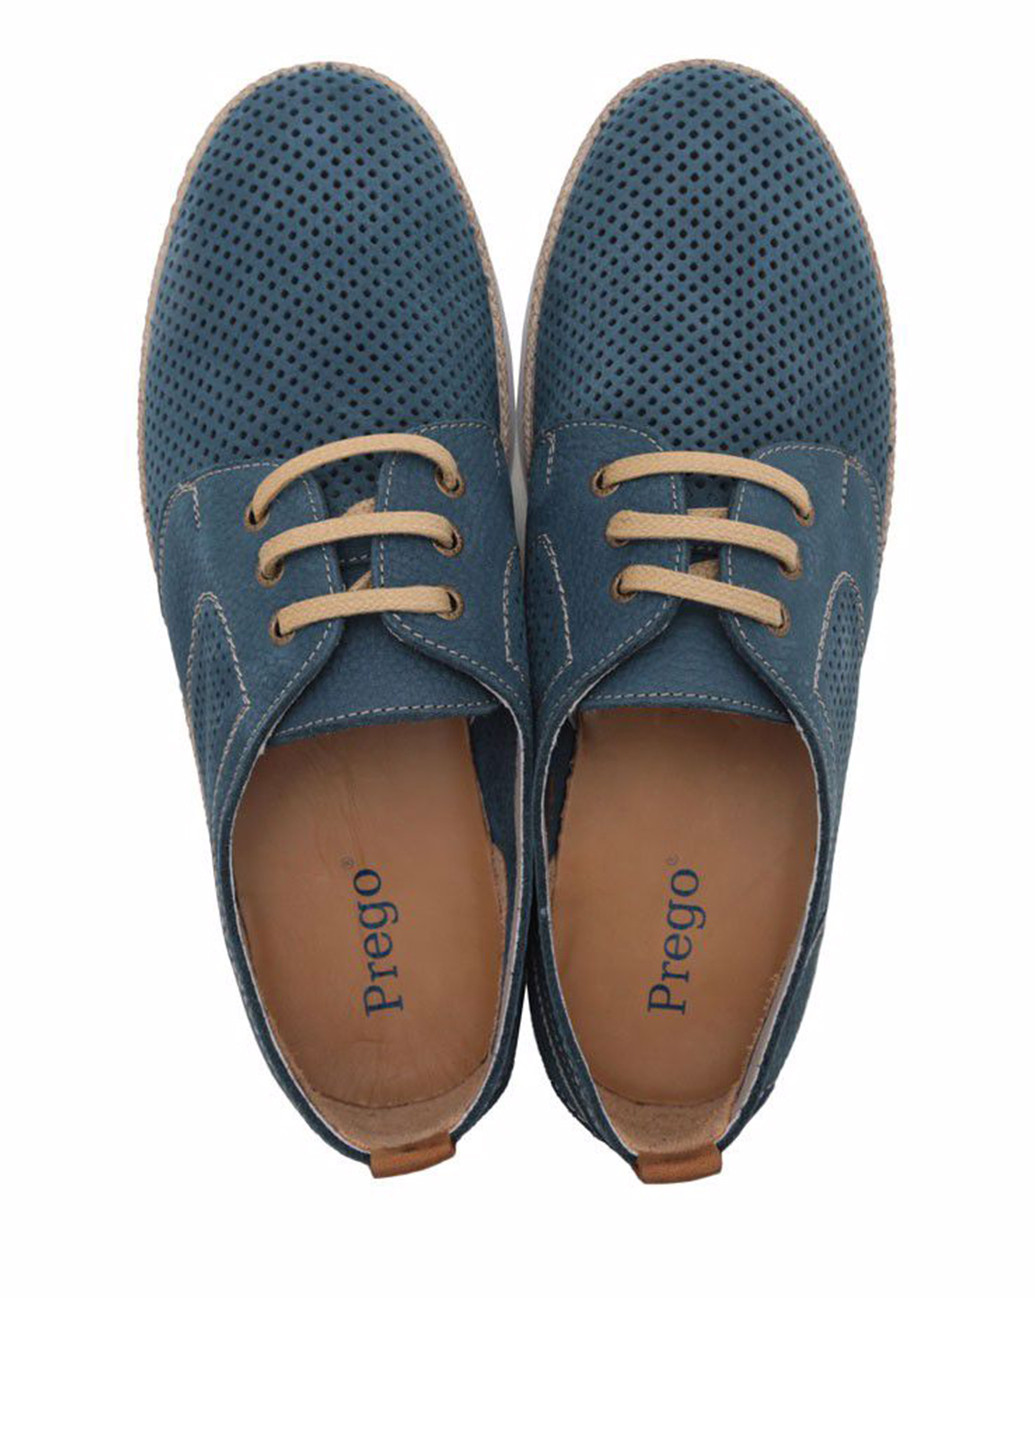 Светло-синие спортивные туфли Prego на шнурках